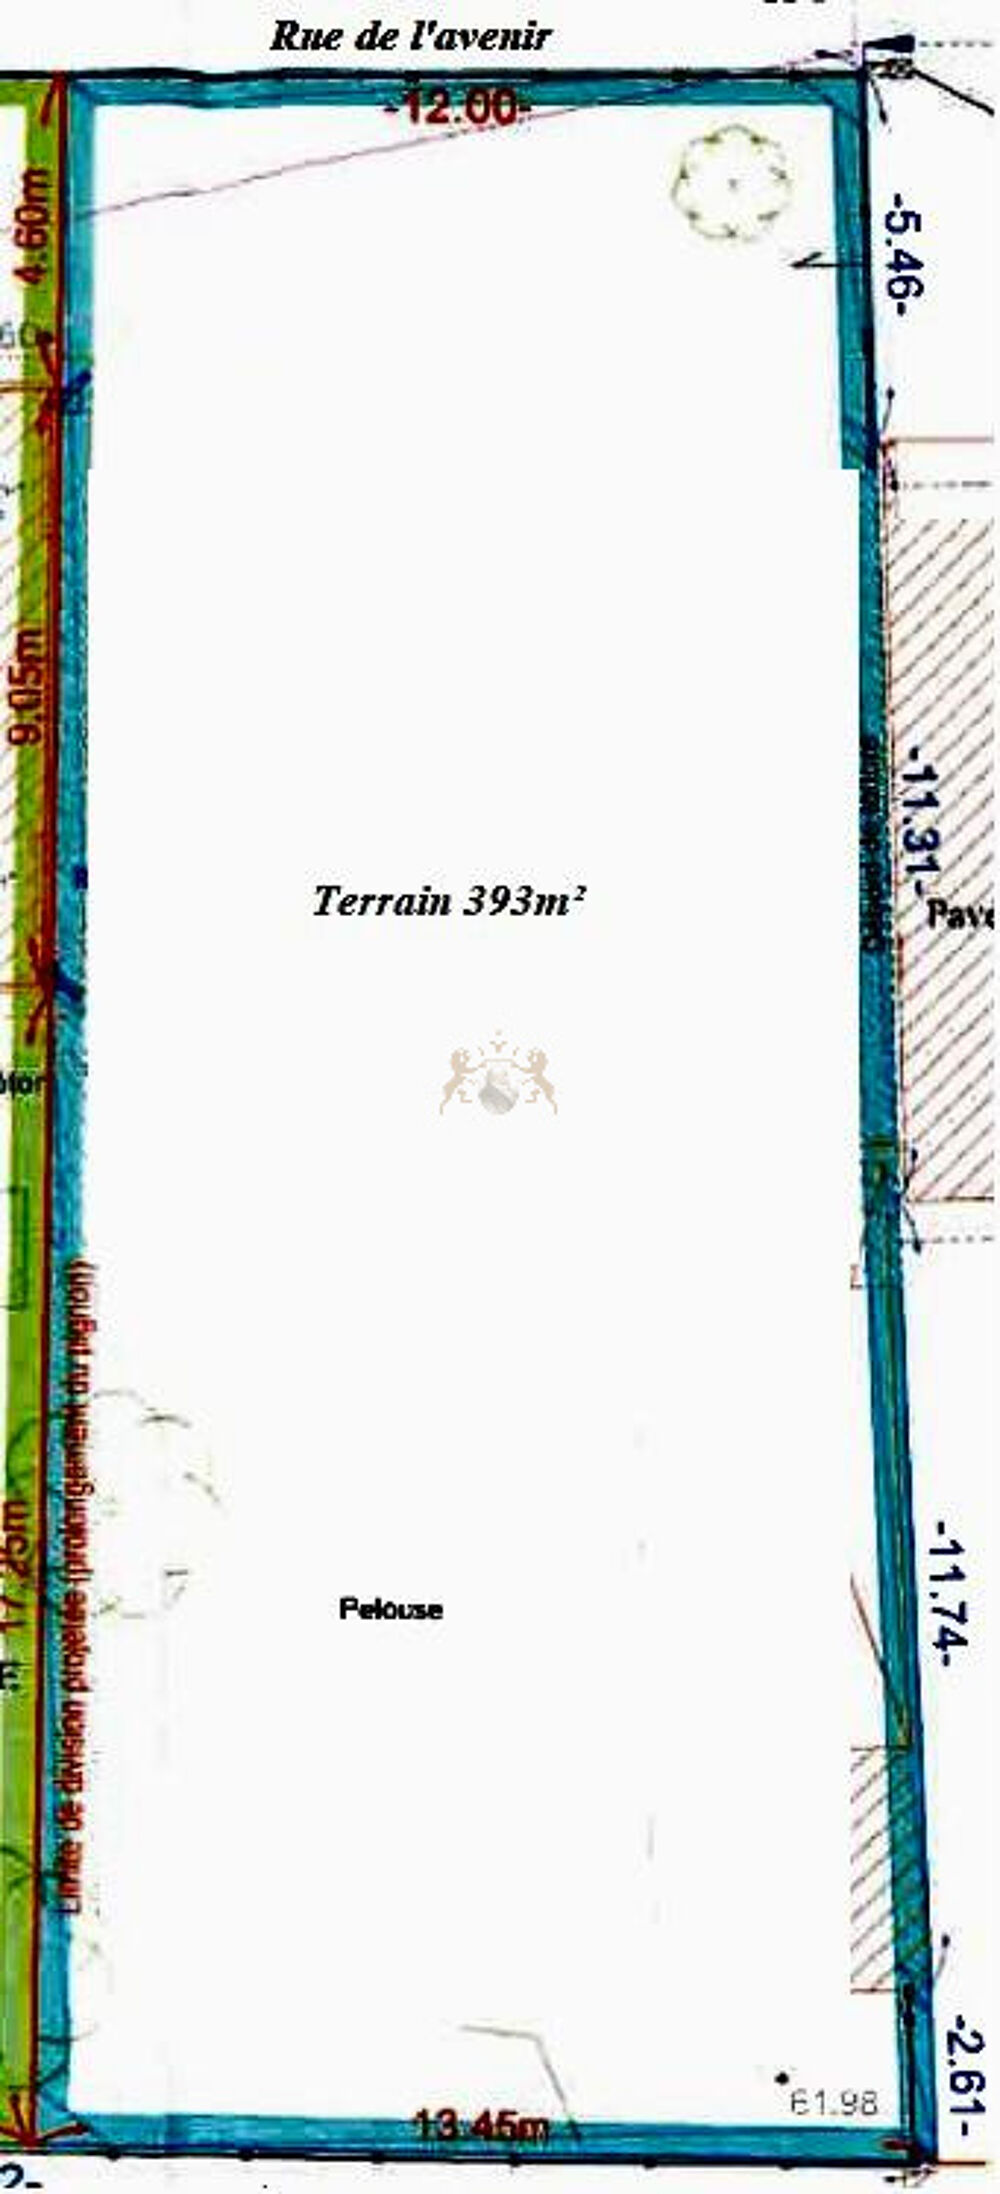 Vente Terrain TERRAIN 400M2 - LES HAUTS DE BONNEUIL S/M Bonneuil sur marne